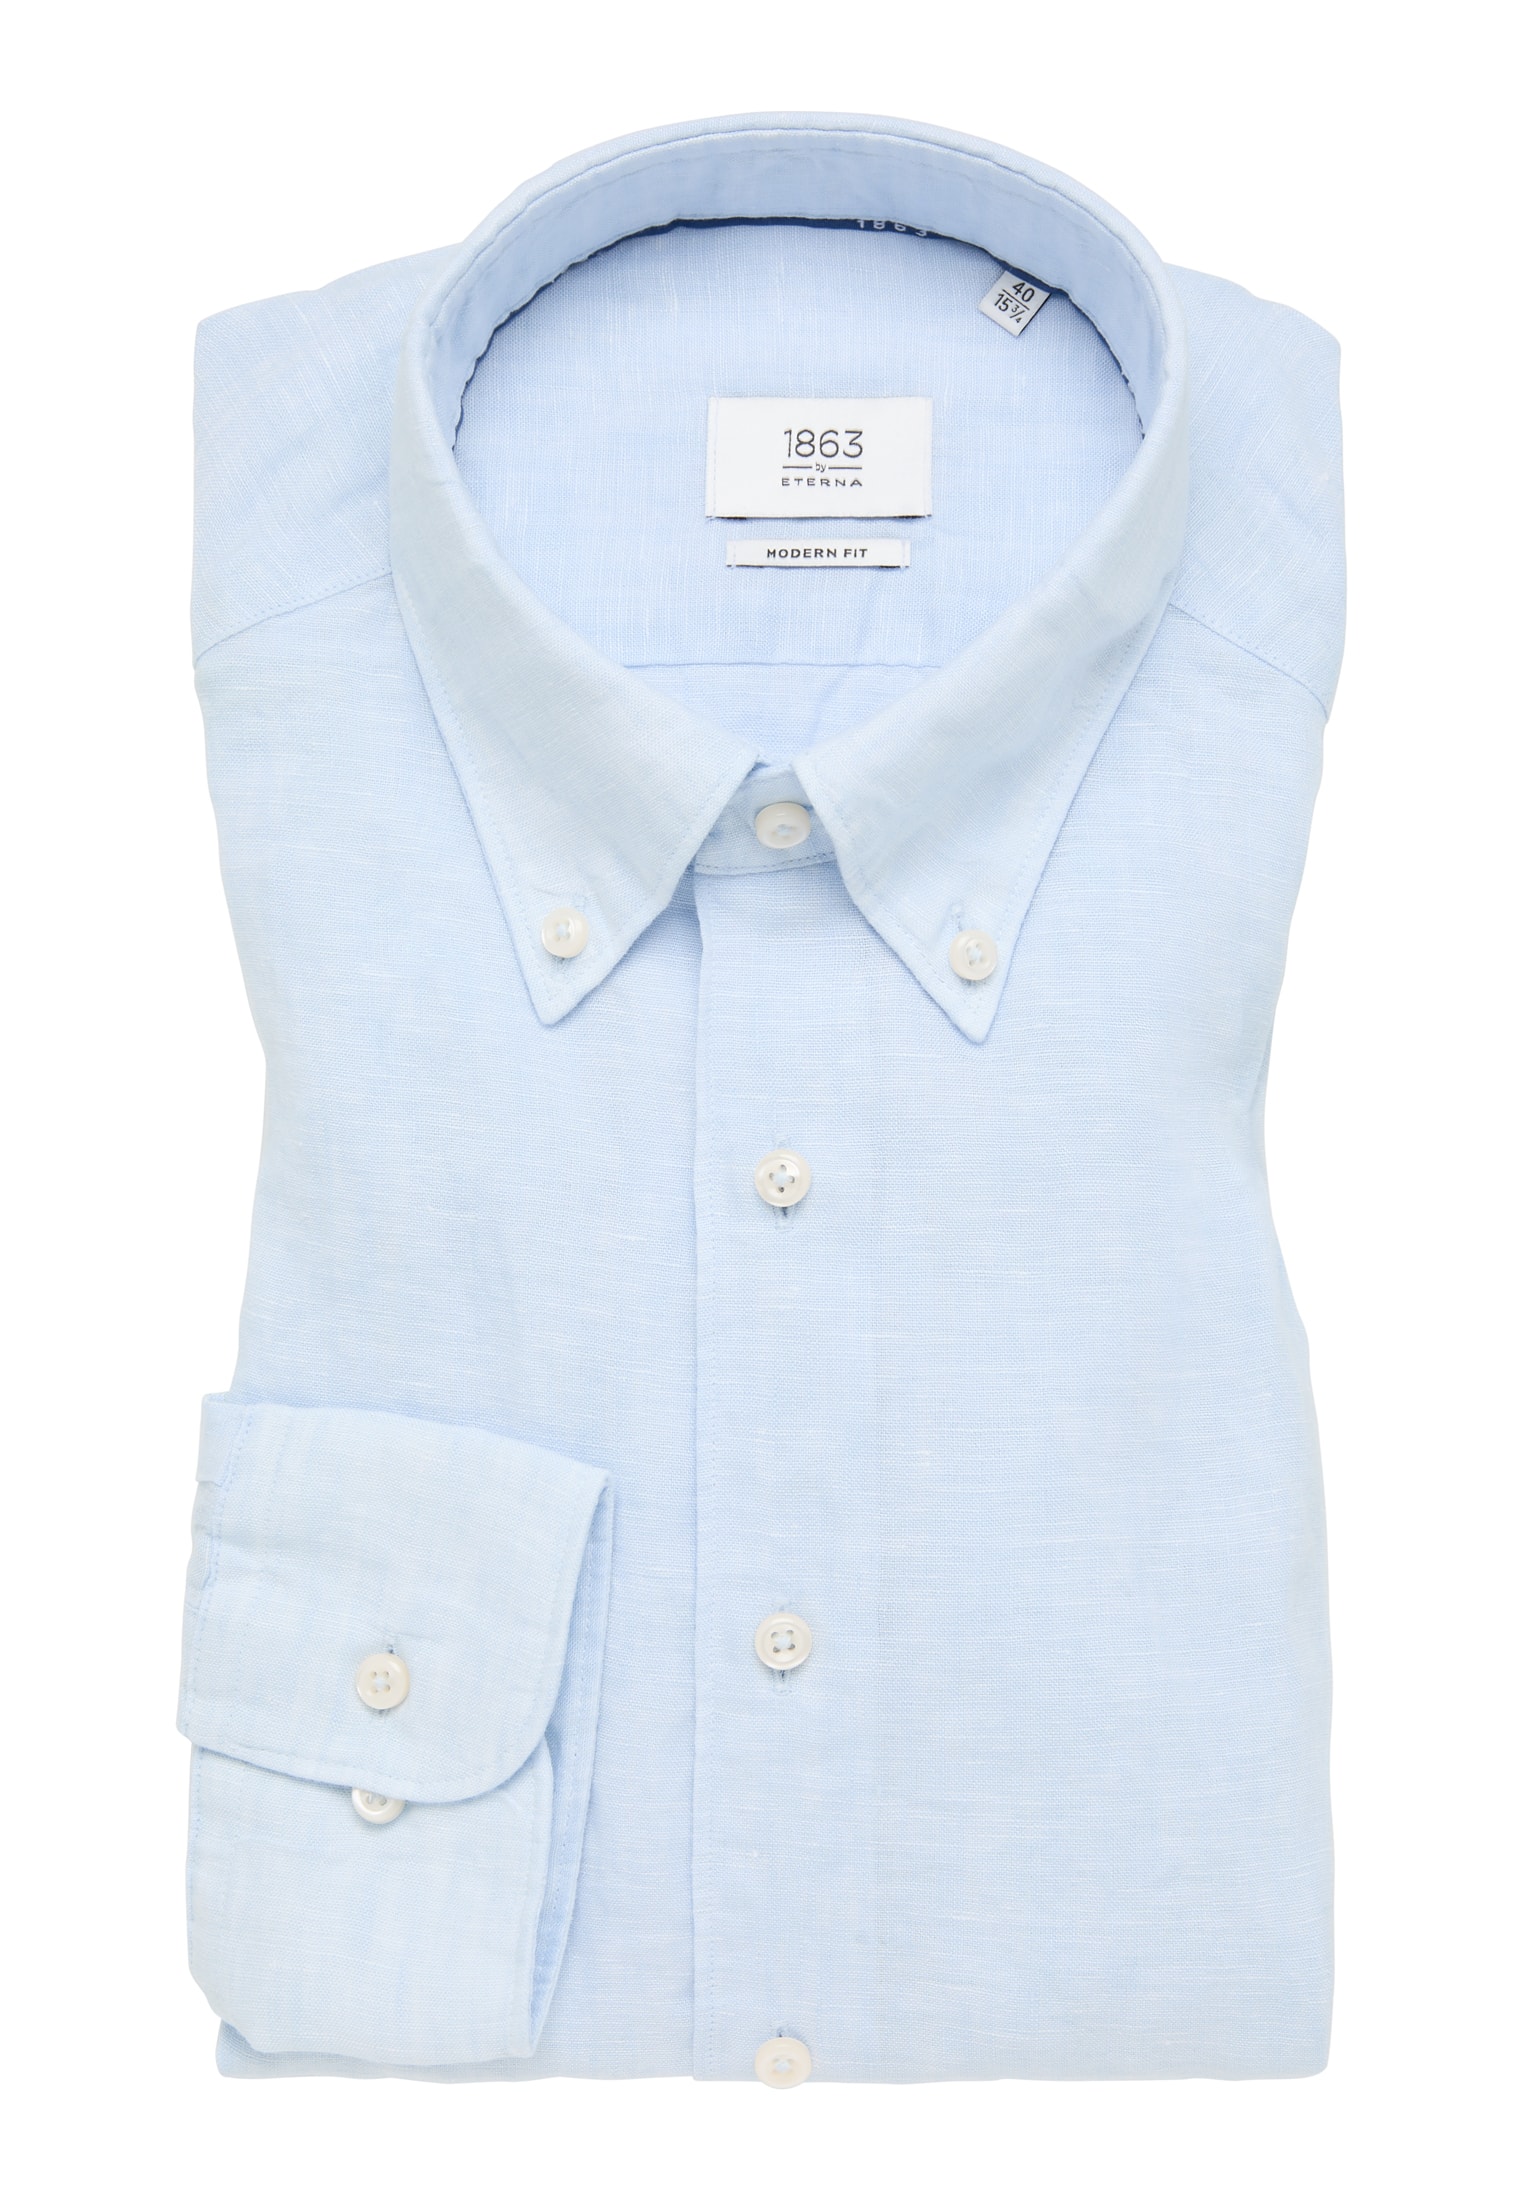 MODERN FIT Shirt in light blue plain | light blue | 44 | long sleeve |  1SH11902-01-11-44-1/1